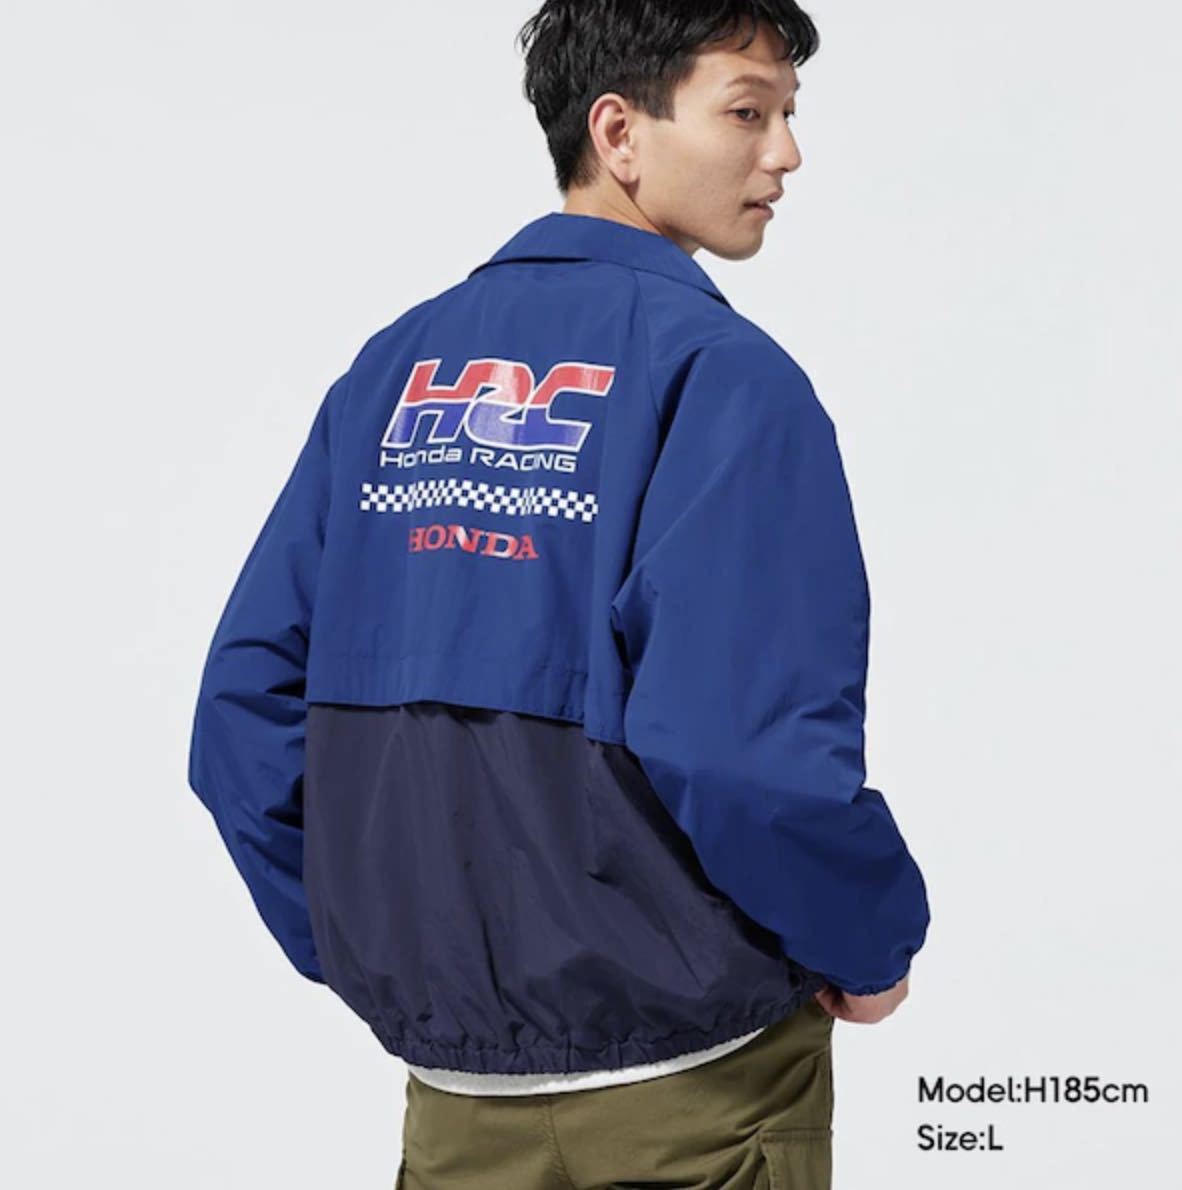 GU HONDA ジップアップブルゾン ジャケット ブルー Mサイズ ホンダ HRC 